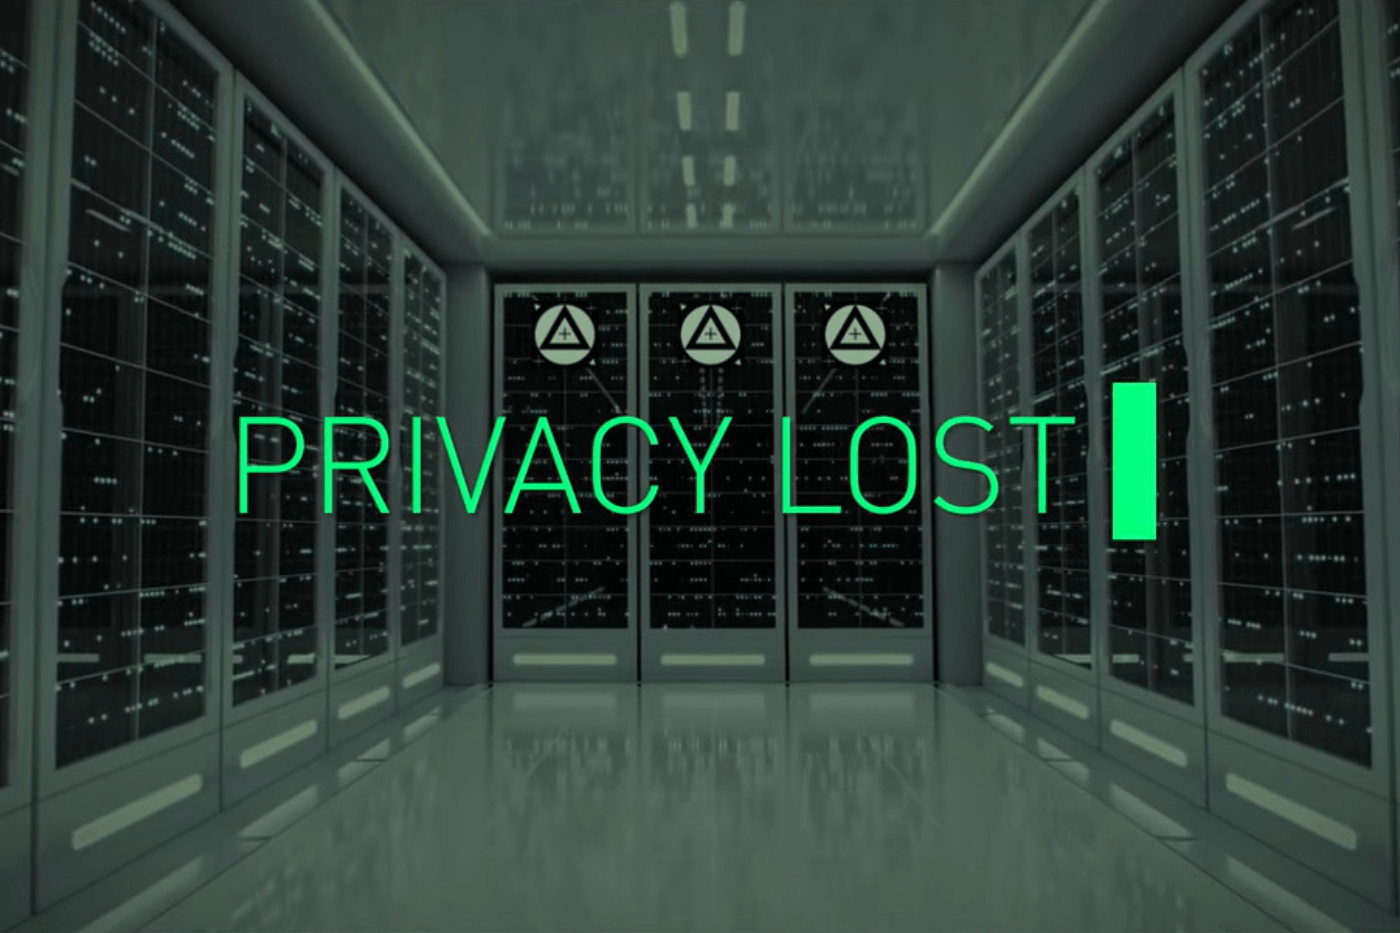 "پرائیویسی کھو گئی": نئی شارٹ فلم میٹاورس کنسرنز دکھاتی ہے - CryptoInfoNet